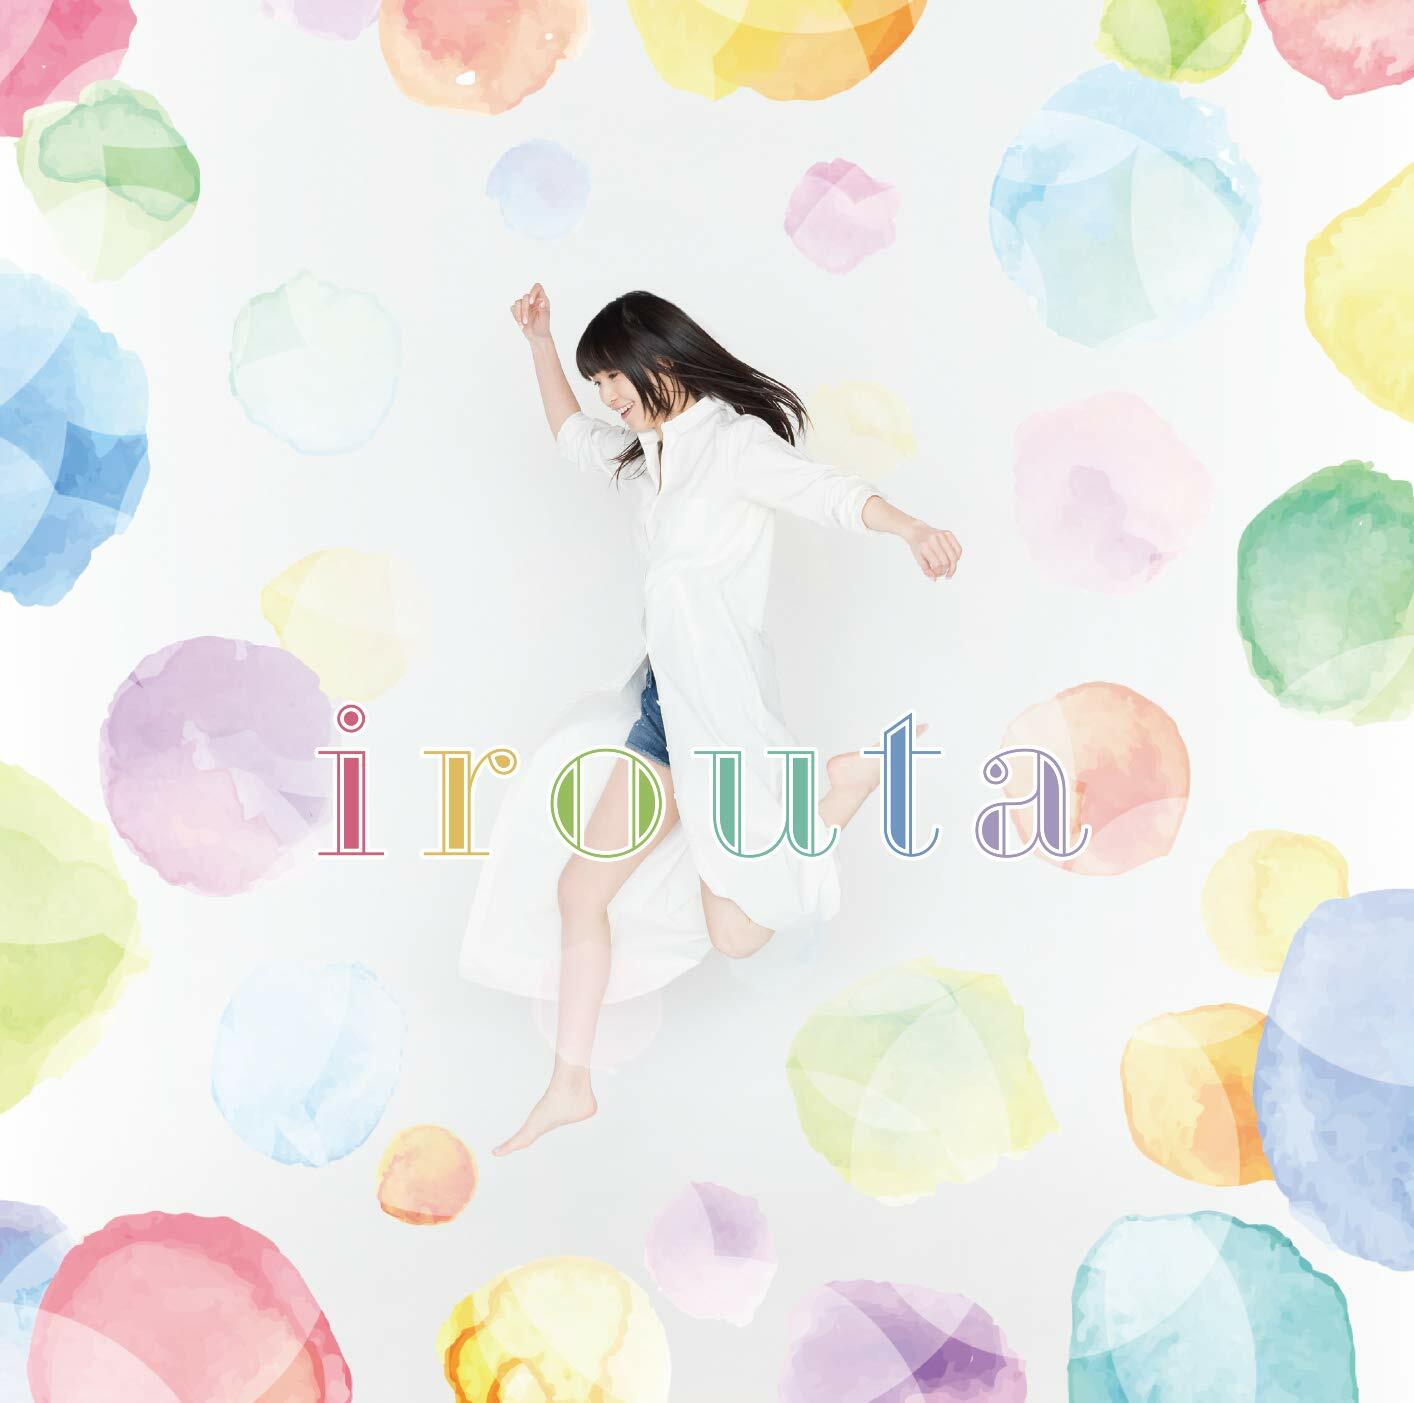 松井惠理子のにじらじっ!テ-マソングCD「irouta」 (CD)